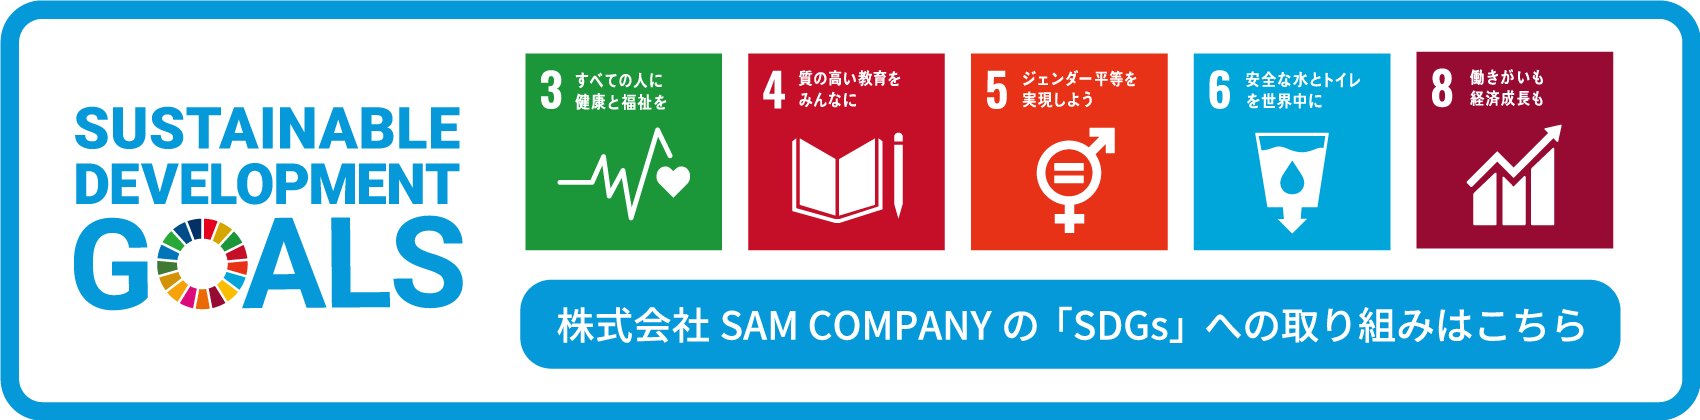 株式会社SAM COMPANYの「SDGs」への取り組みはこちら